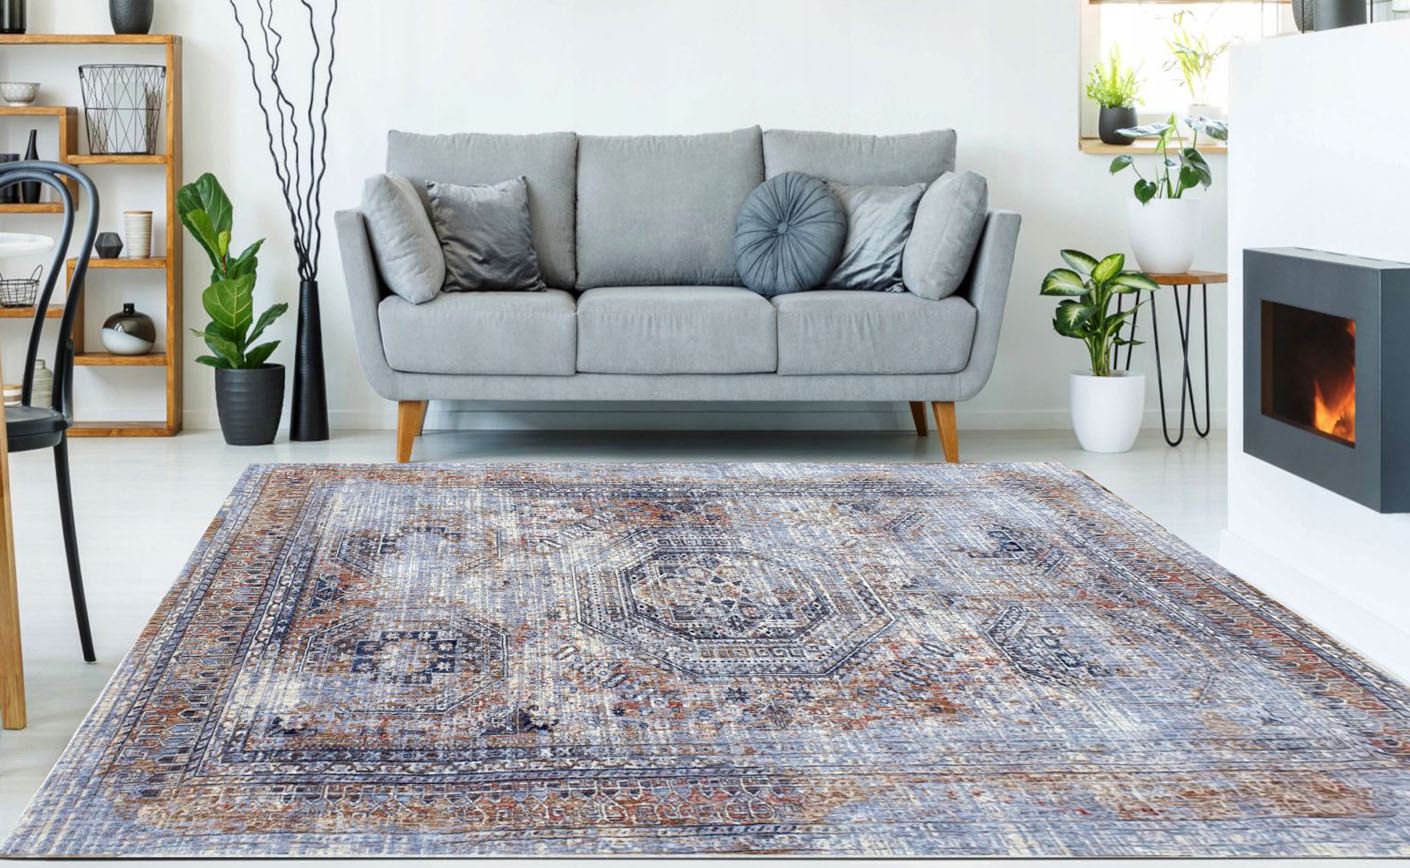 Modne dywany loftowe- poznaj dywany w stylu vintage